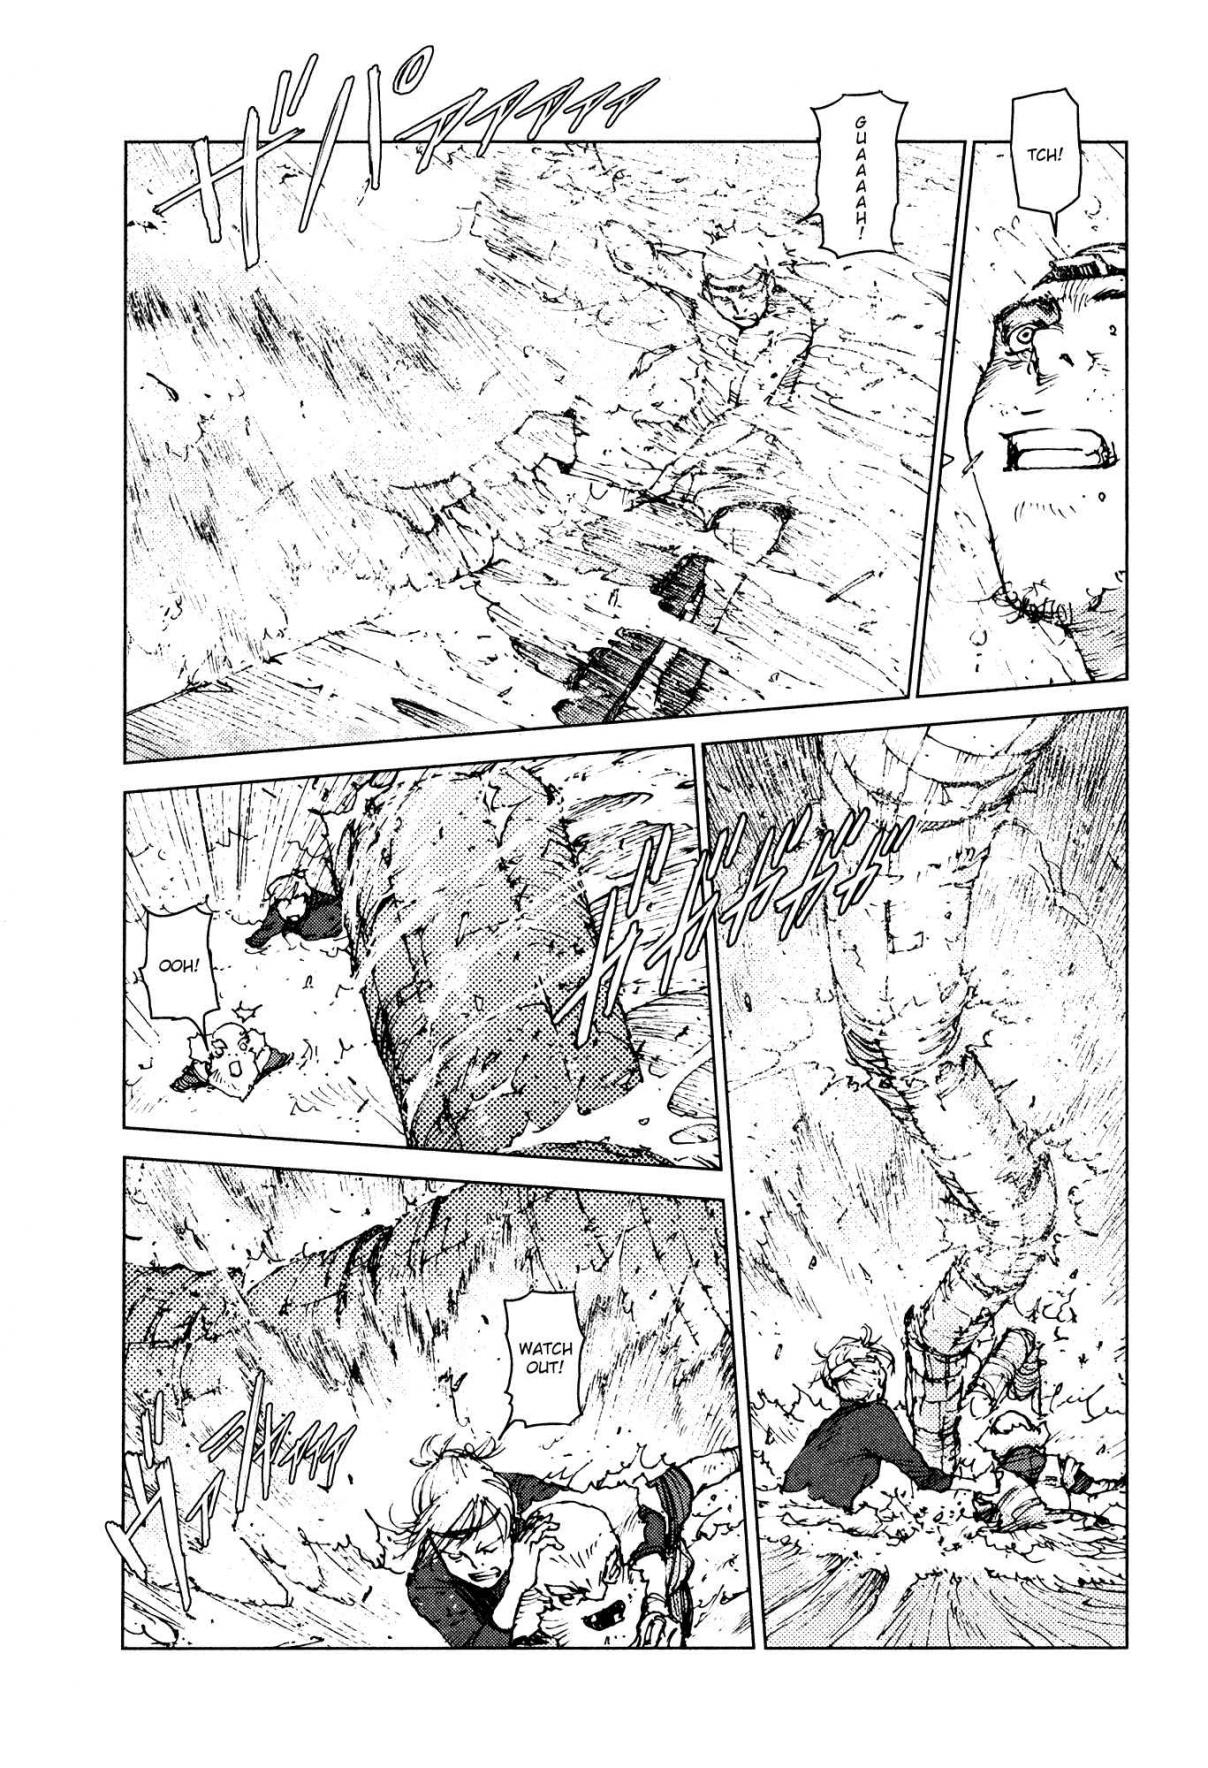 Survival: Shounen S no Kiroku Vol. 5 Ch. 91 Danger 91